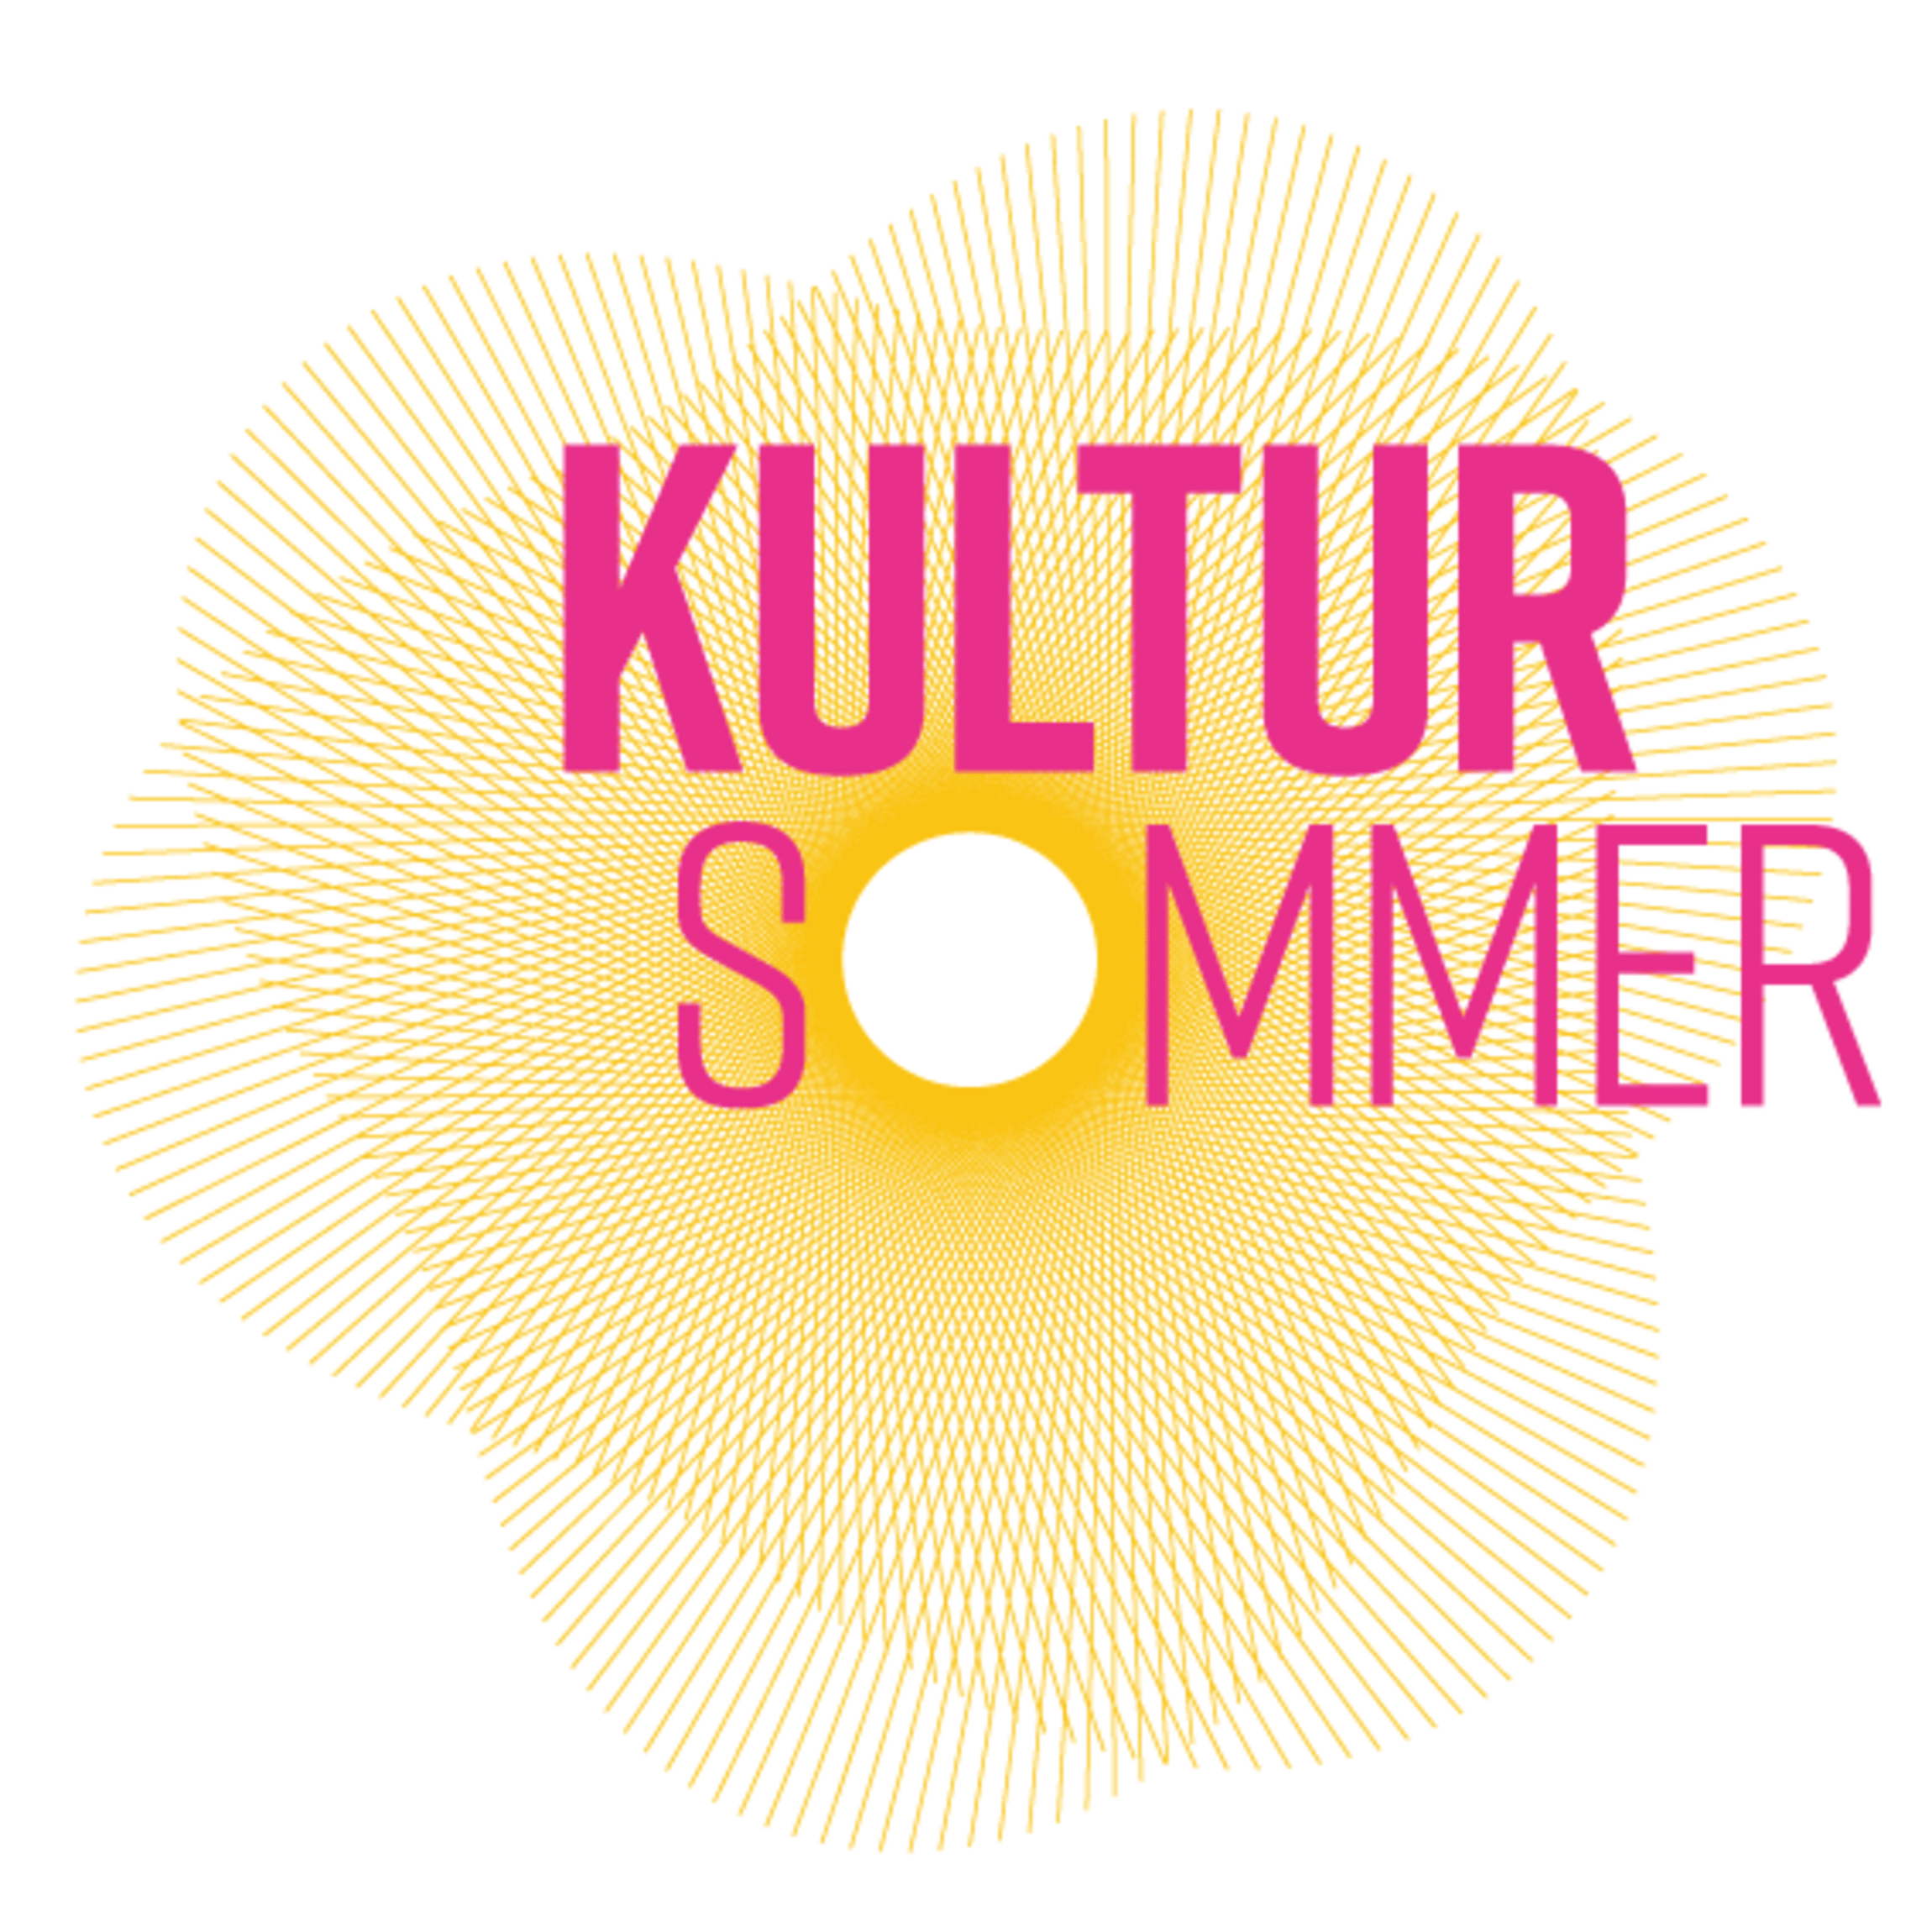 Logo Kultursommer